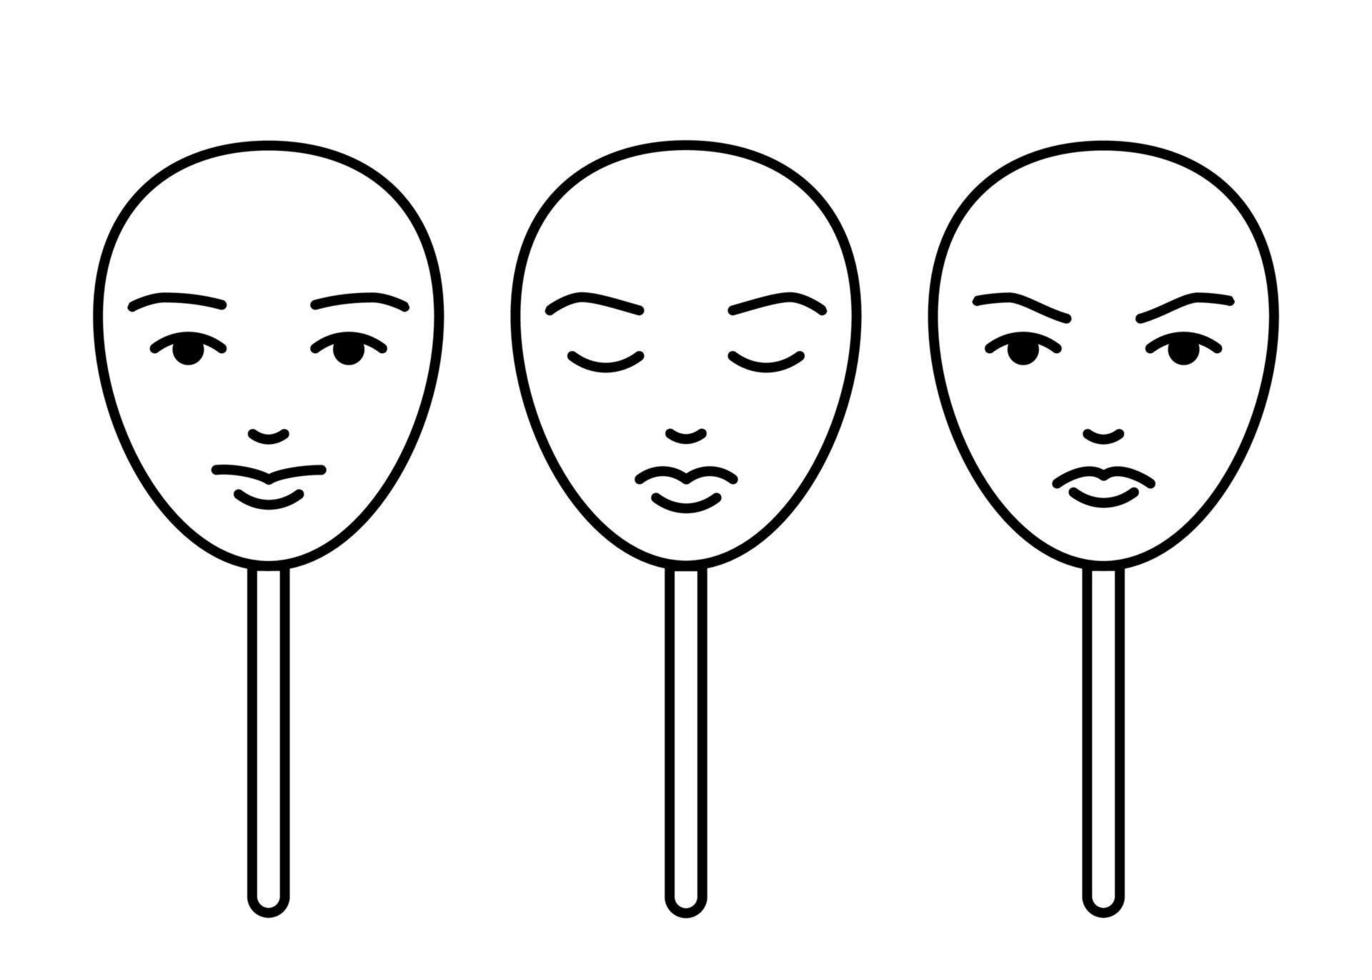 gezichtsmaskers die emoties uiten, nepstemming, lijntekeningen. persoonlijkheid veranderen om te voldoen aan sociale vereisten en druk. controle emotie, spelen rol. vector illustratie